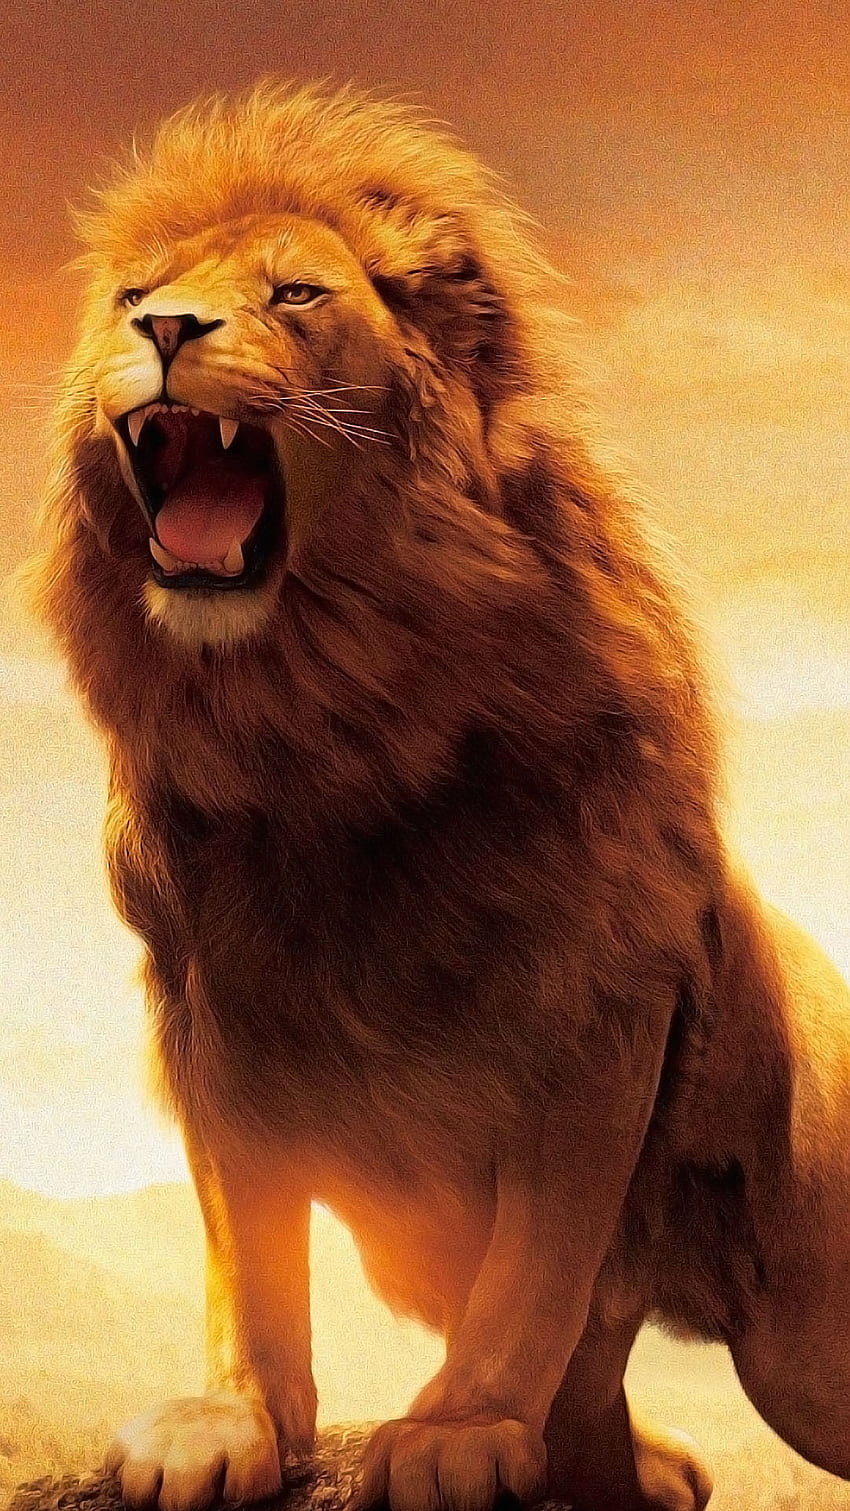 Roaring Lion, Lion Roaring Ultra HD phone wallpaper | Pxfuel